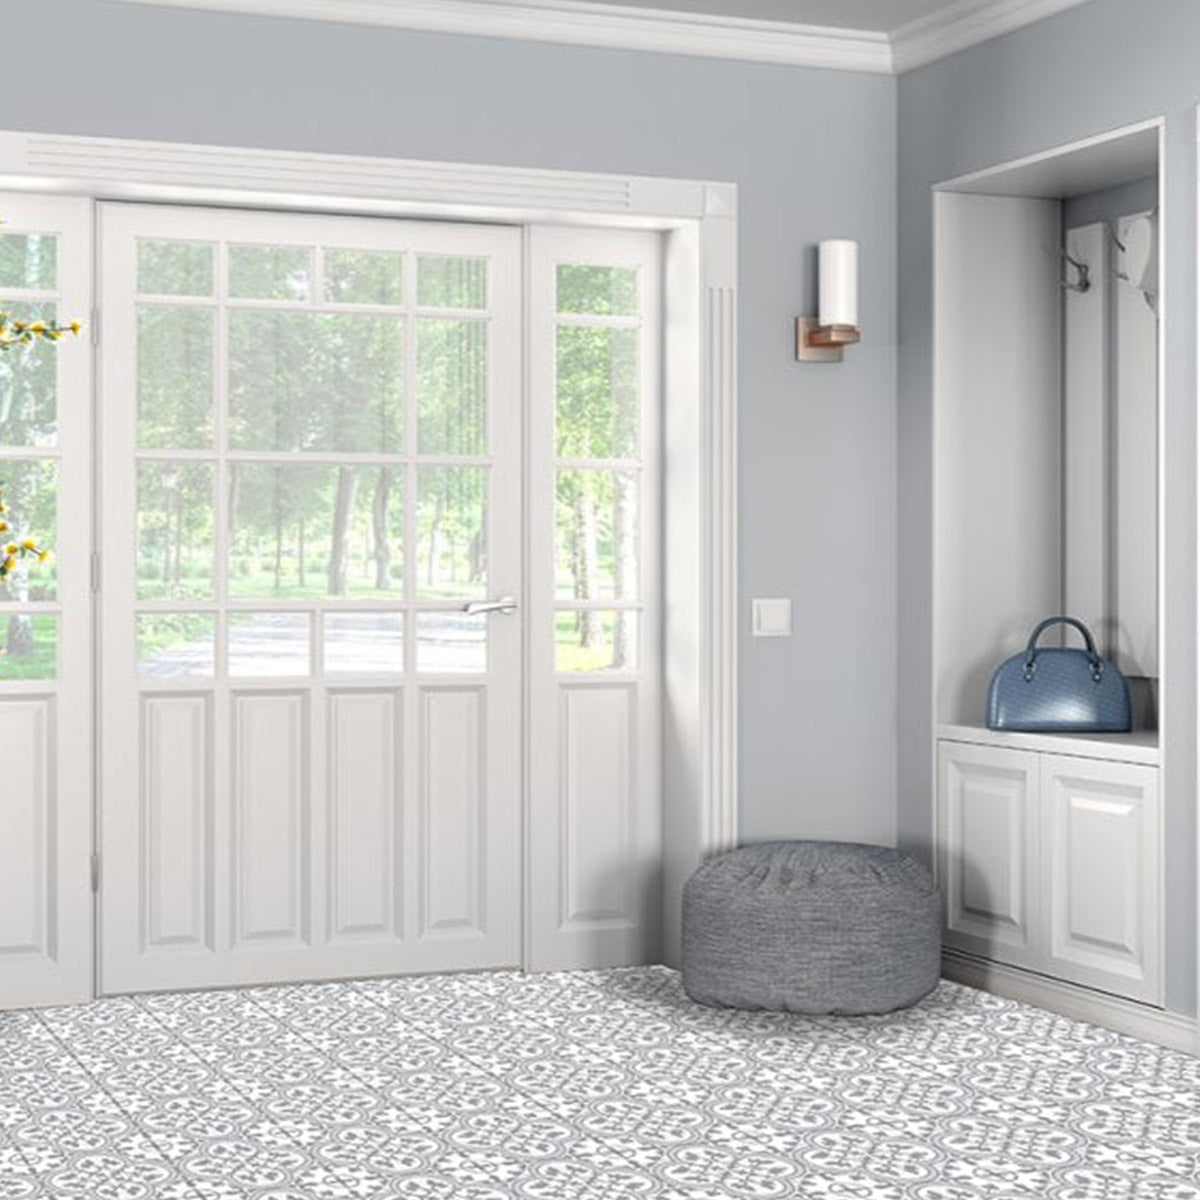 Ledbury Slate Grey Wall & Floor Porcelain Tile 45 x 45cm